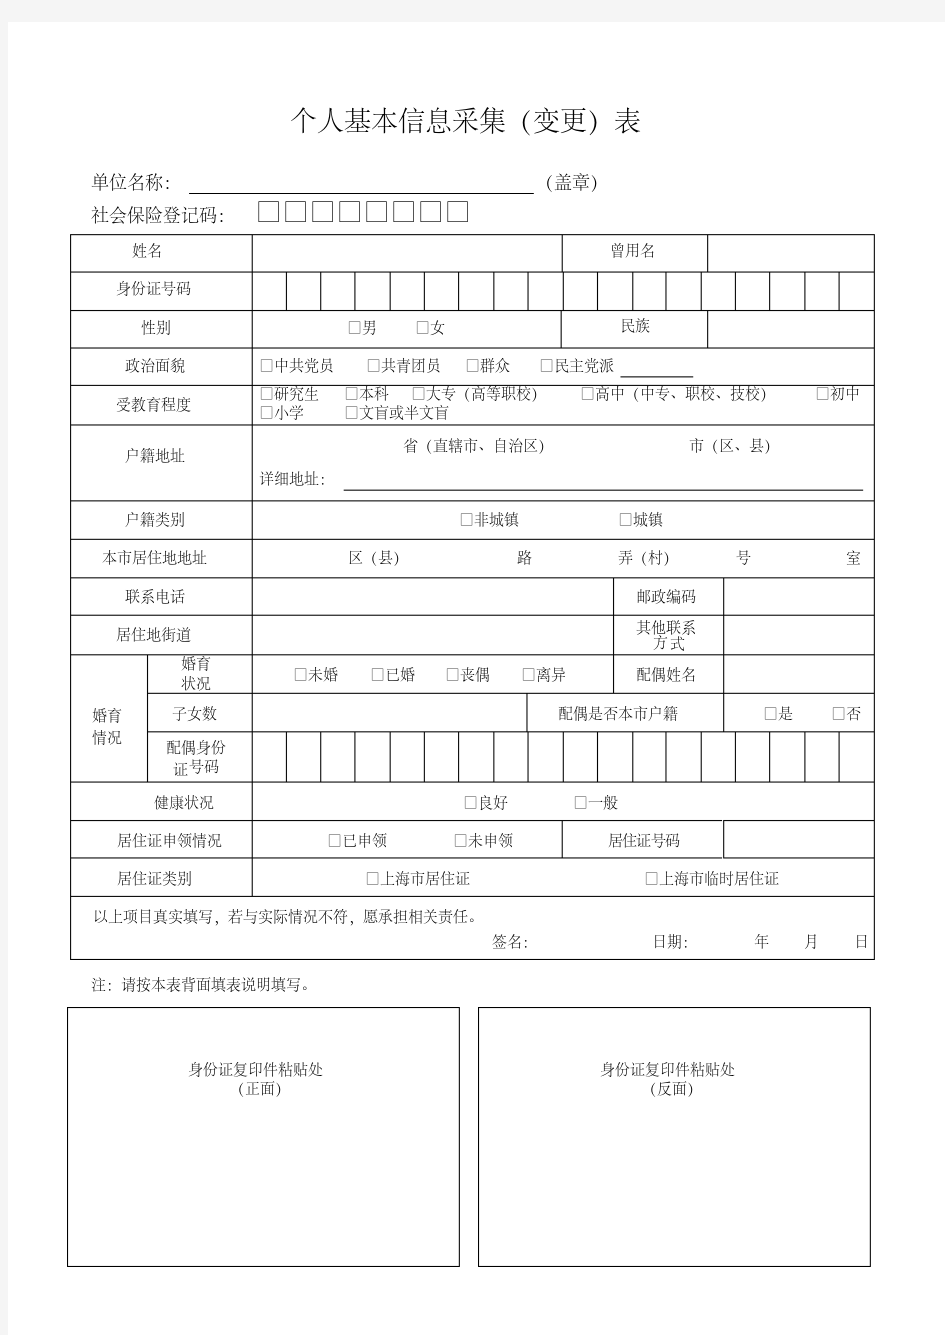 (完整word版)上海个人基本信息采集(变更)表